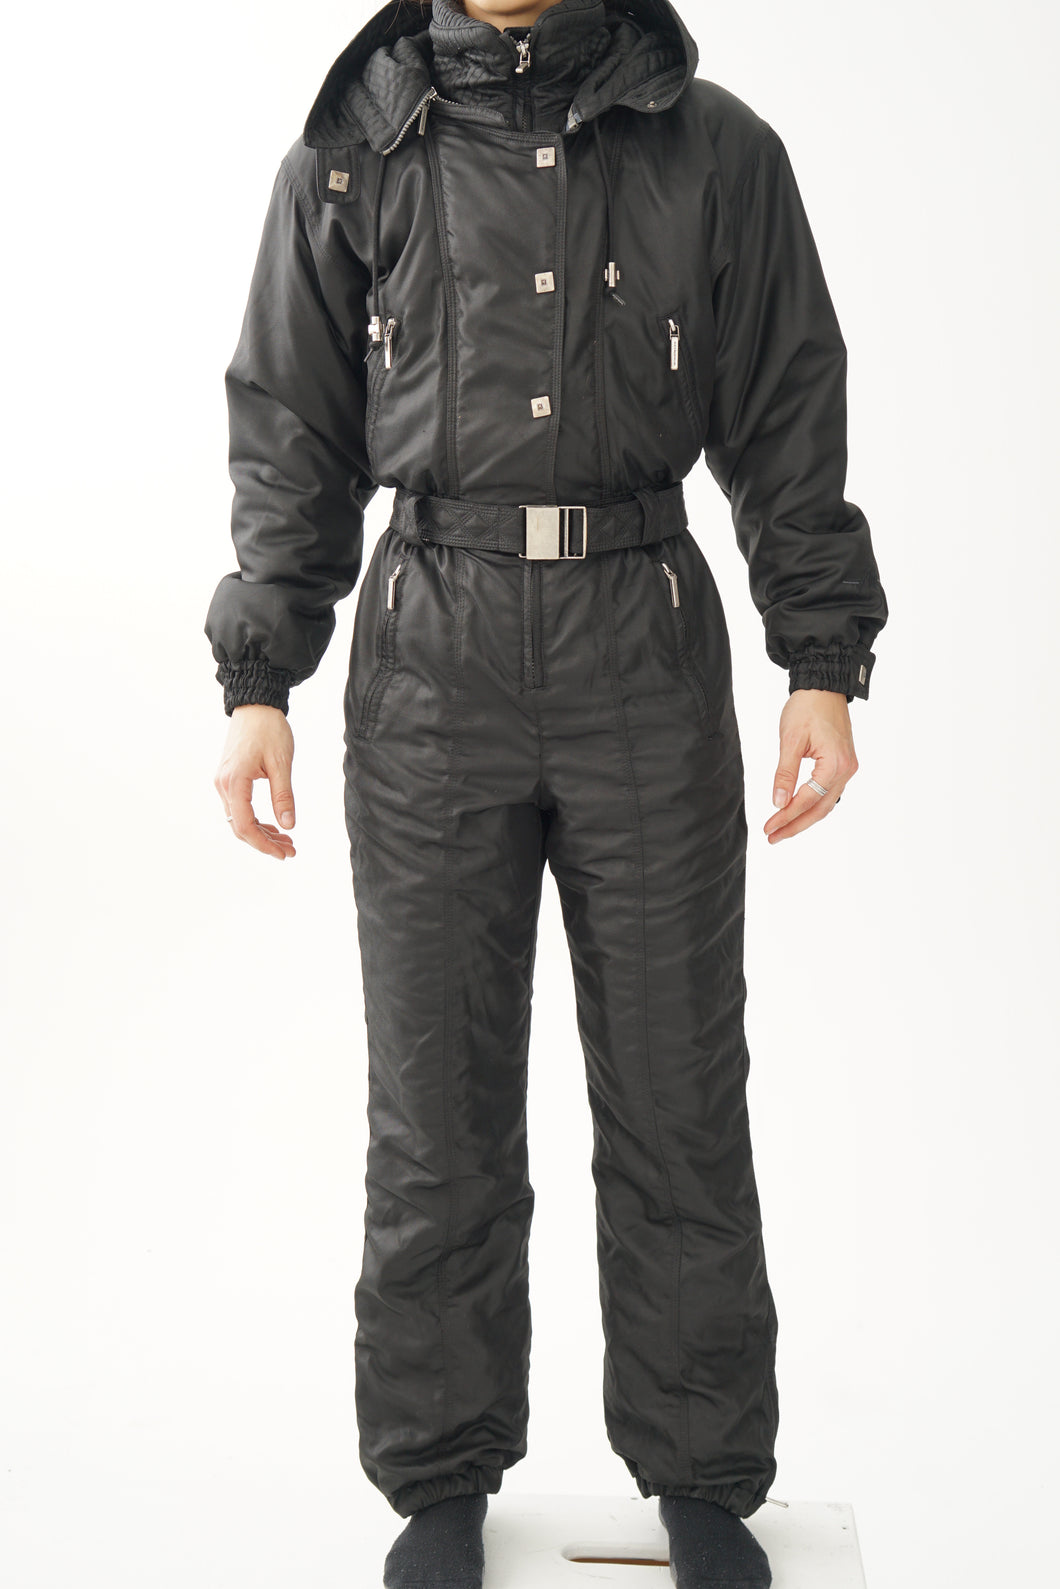 Fou one piece vintage Metropolis ski suit, snow suit de qualité noir taille 8